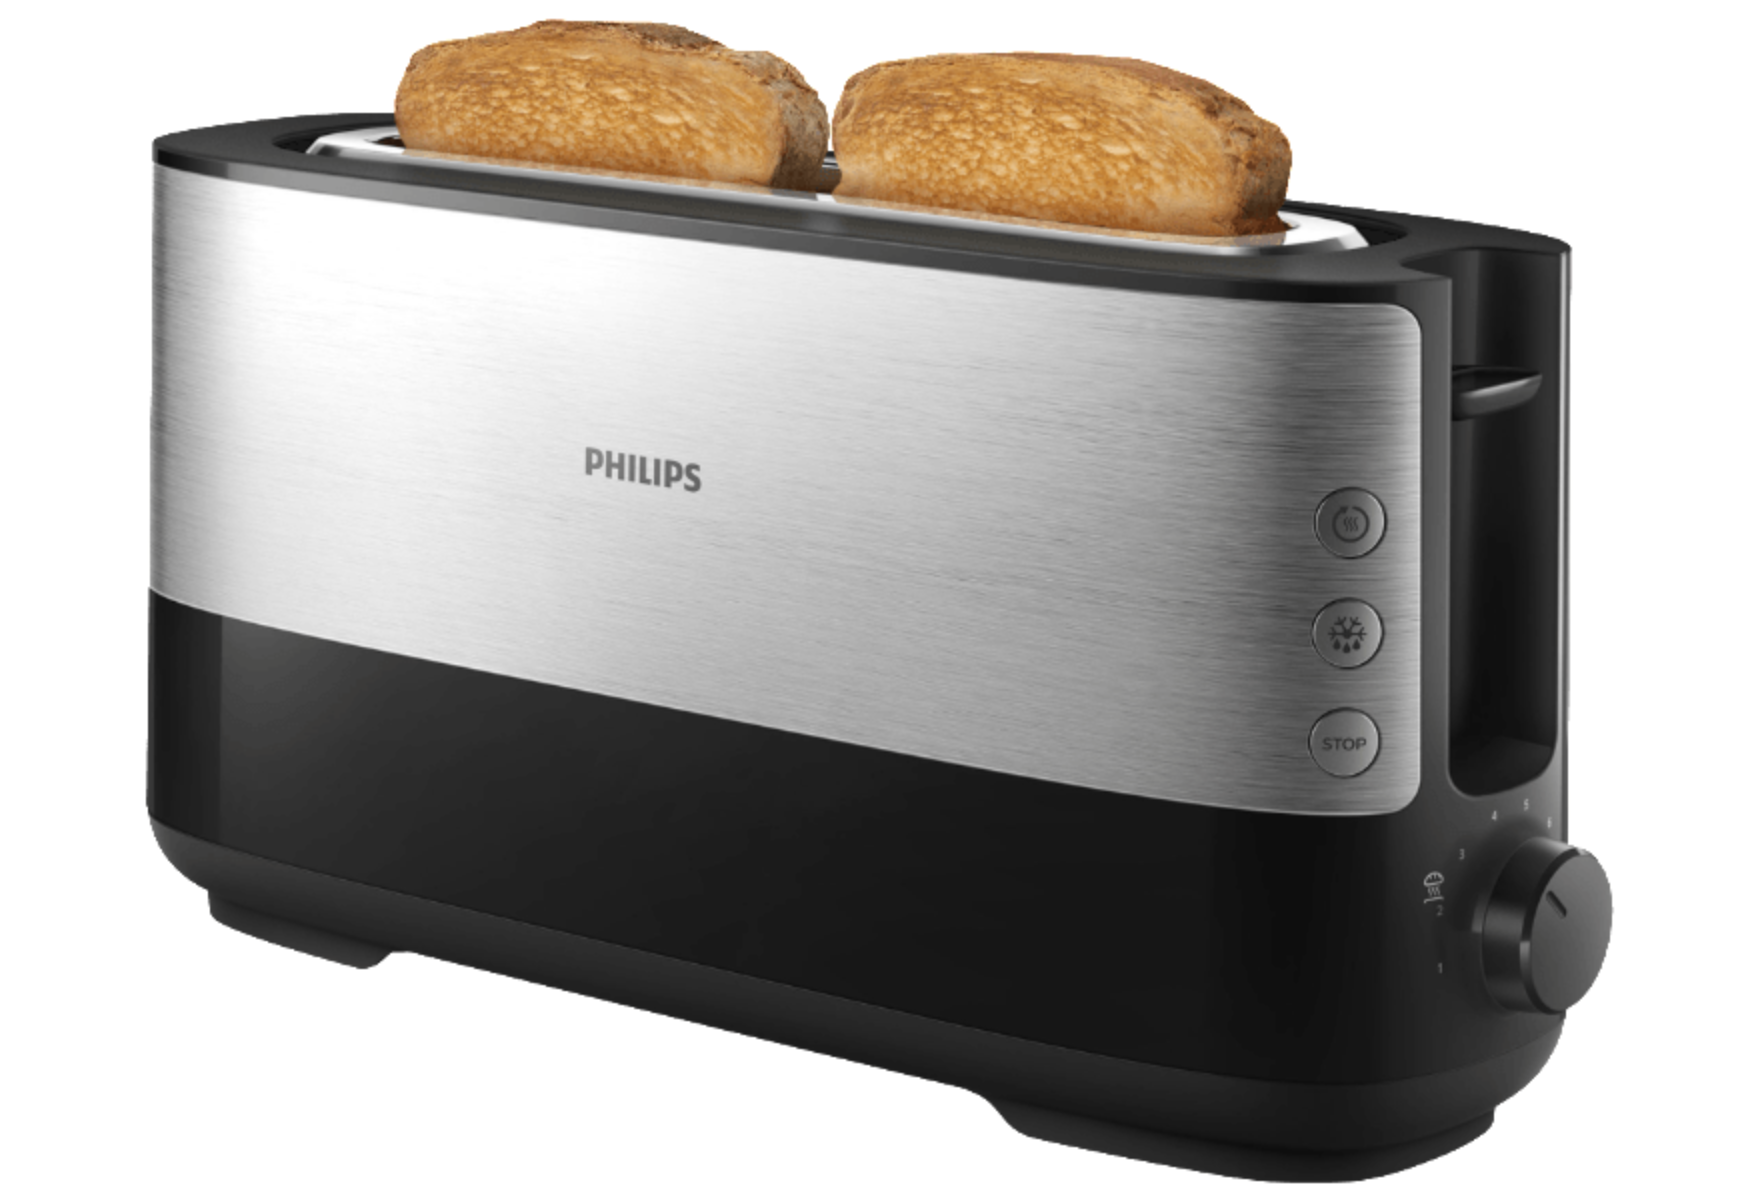 PHILIPS HD 2692/90 Toaster für nur 25,- Euro inkl. Versand